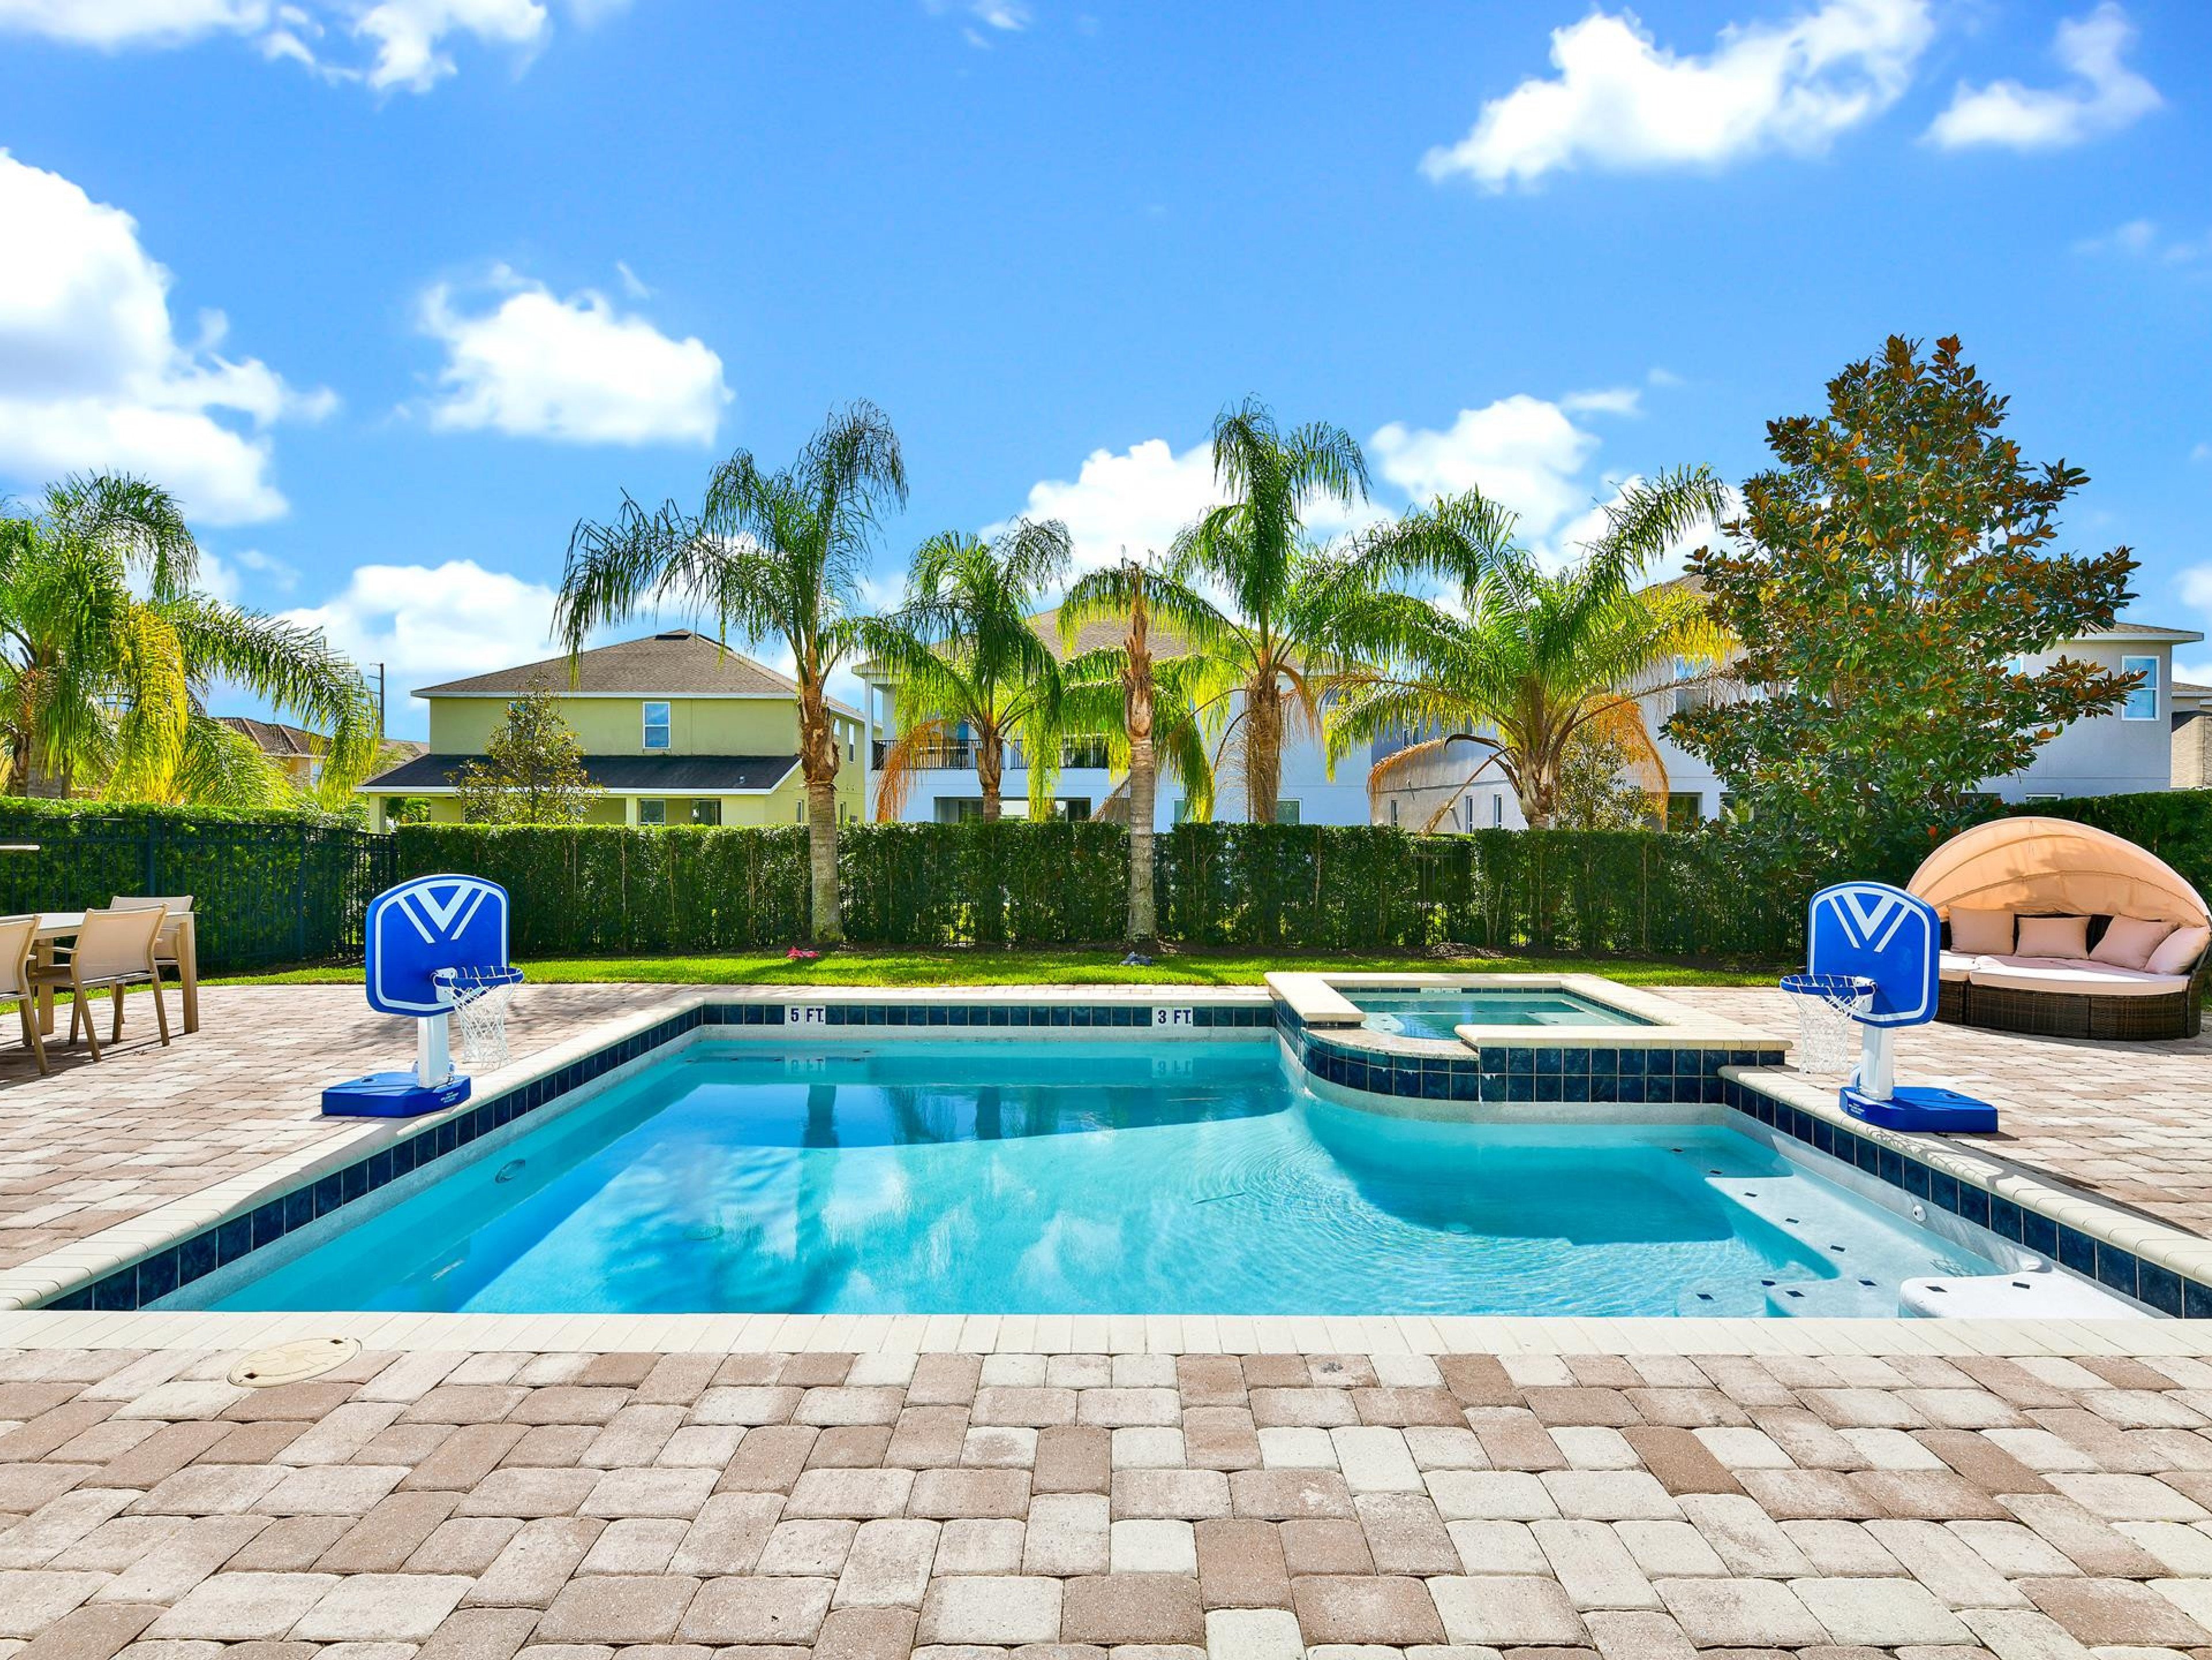 13 bedroom vacation rentals in Orlando Florida Encore Resort 1